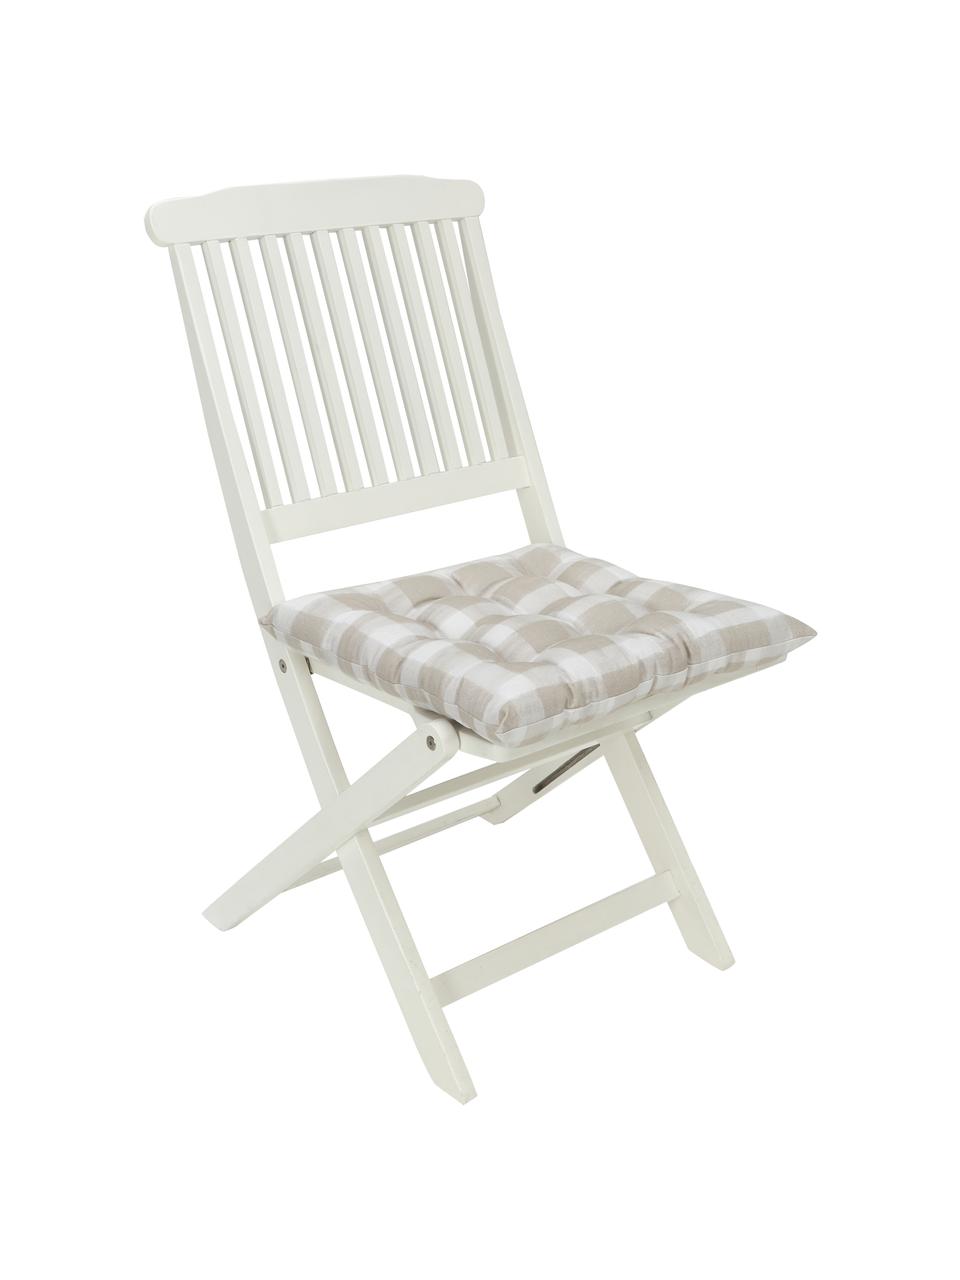 Kariertes Baumwoll-Sitzkissen Milène, Bezug: 100% Baumwolle, Beige, Weiss, B 40 x L 40 cm